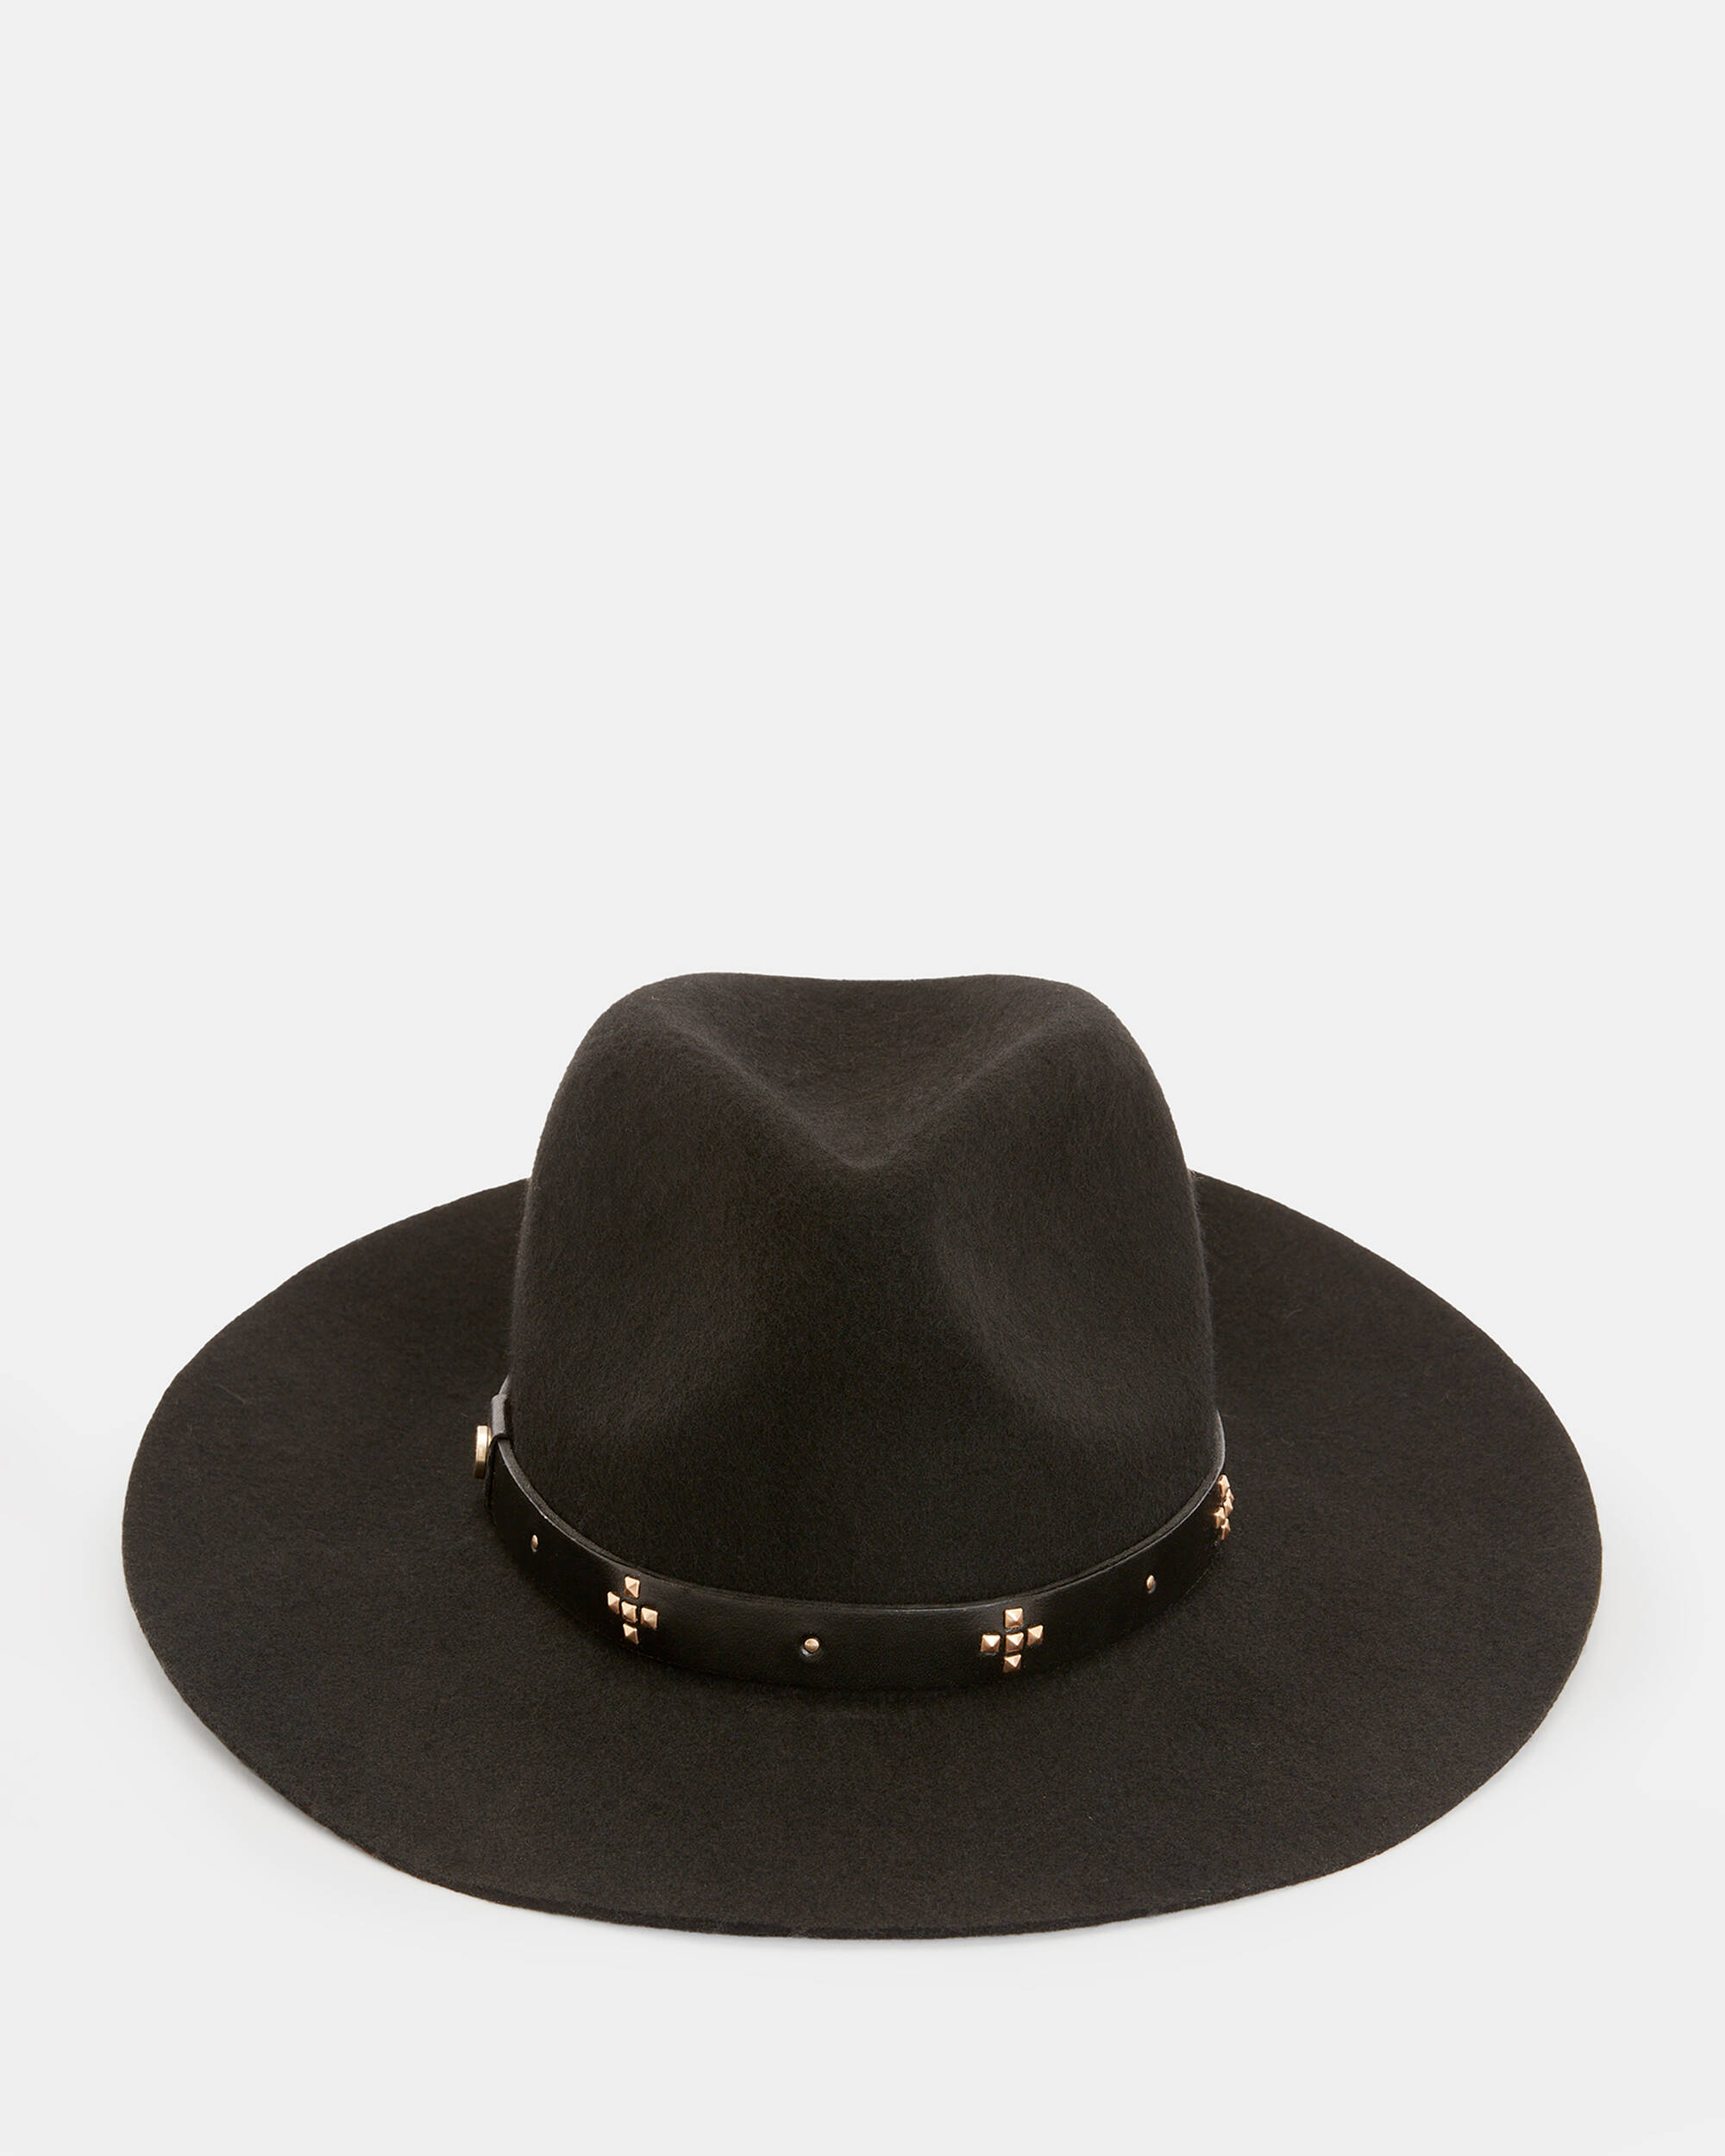 Nova Studded Leather Band Fedora Hat  large image number 5